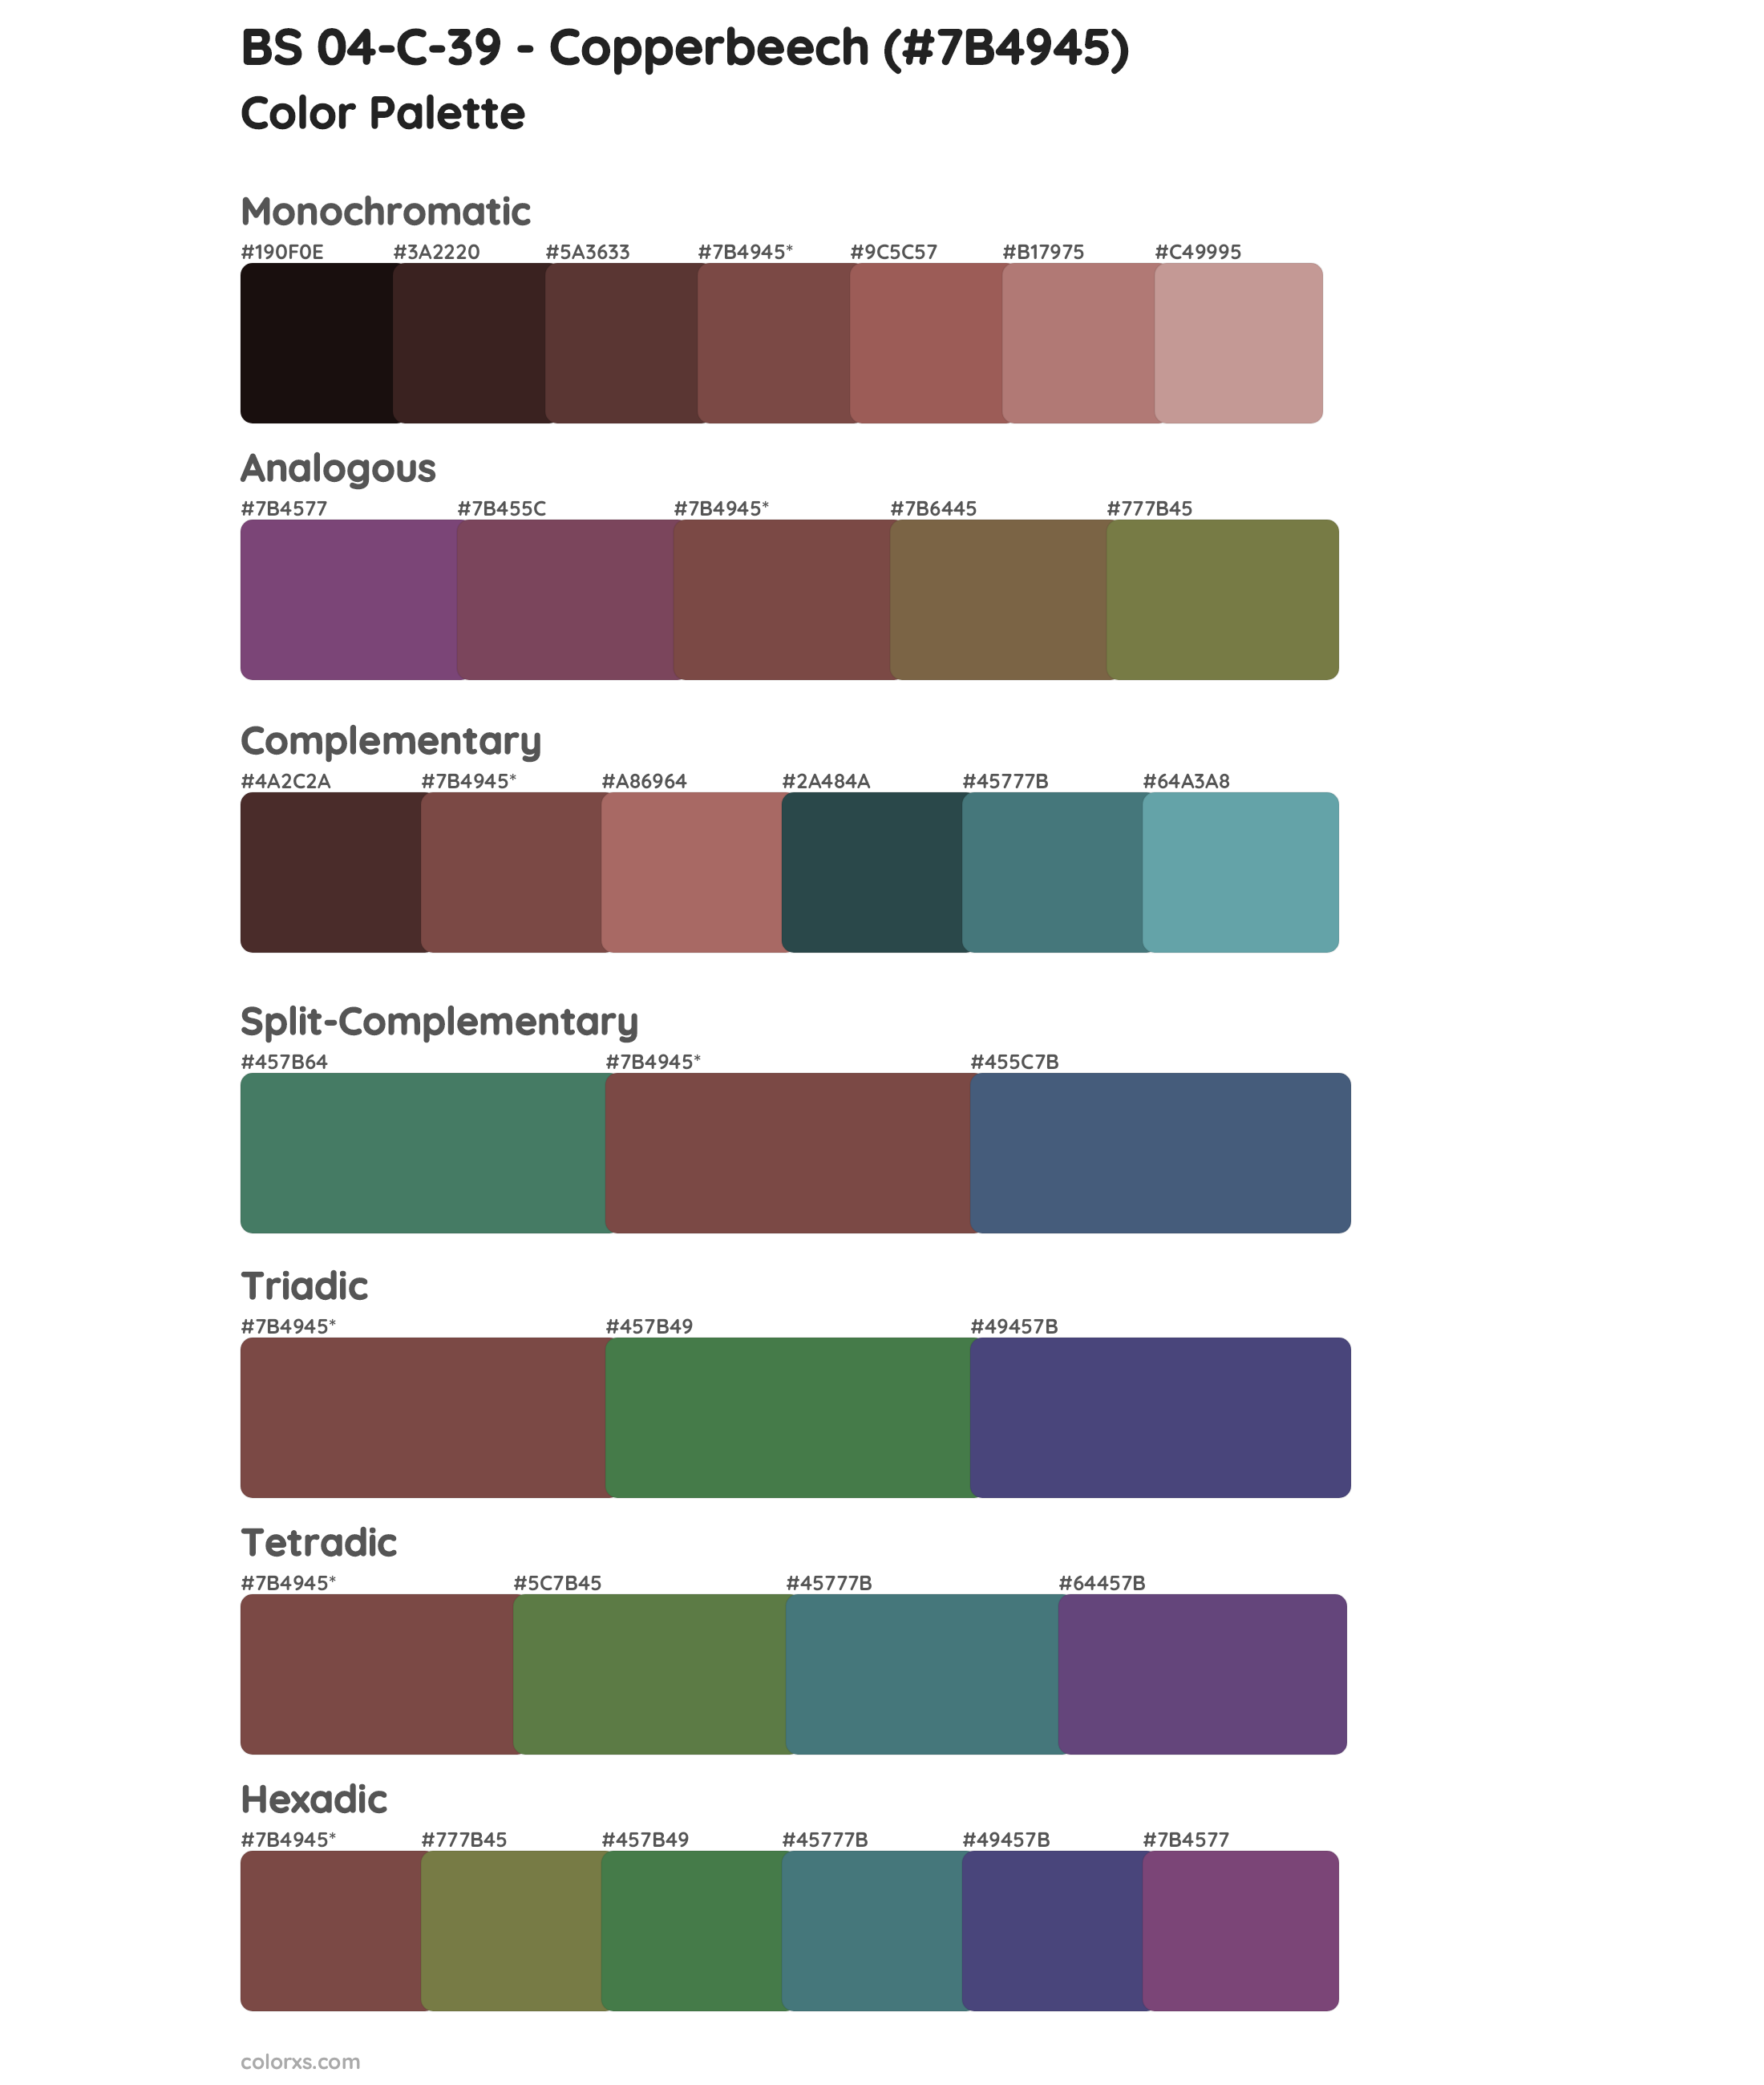 BS 04-C-39 - Copperbeech Color Scheme Palettes